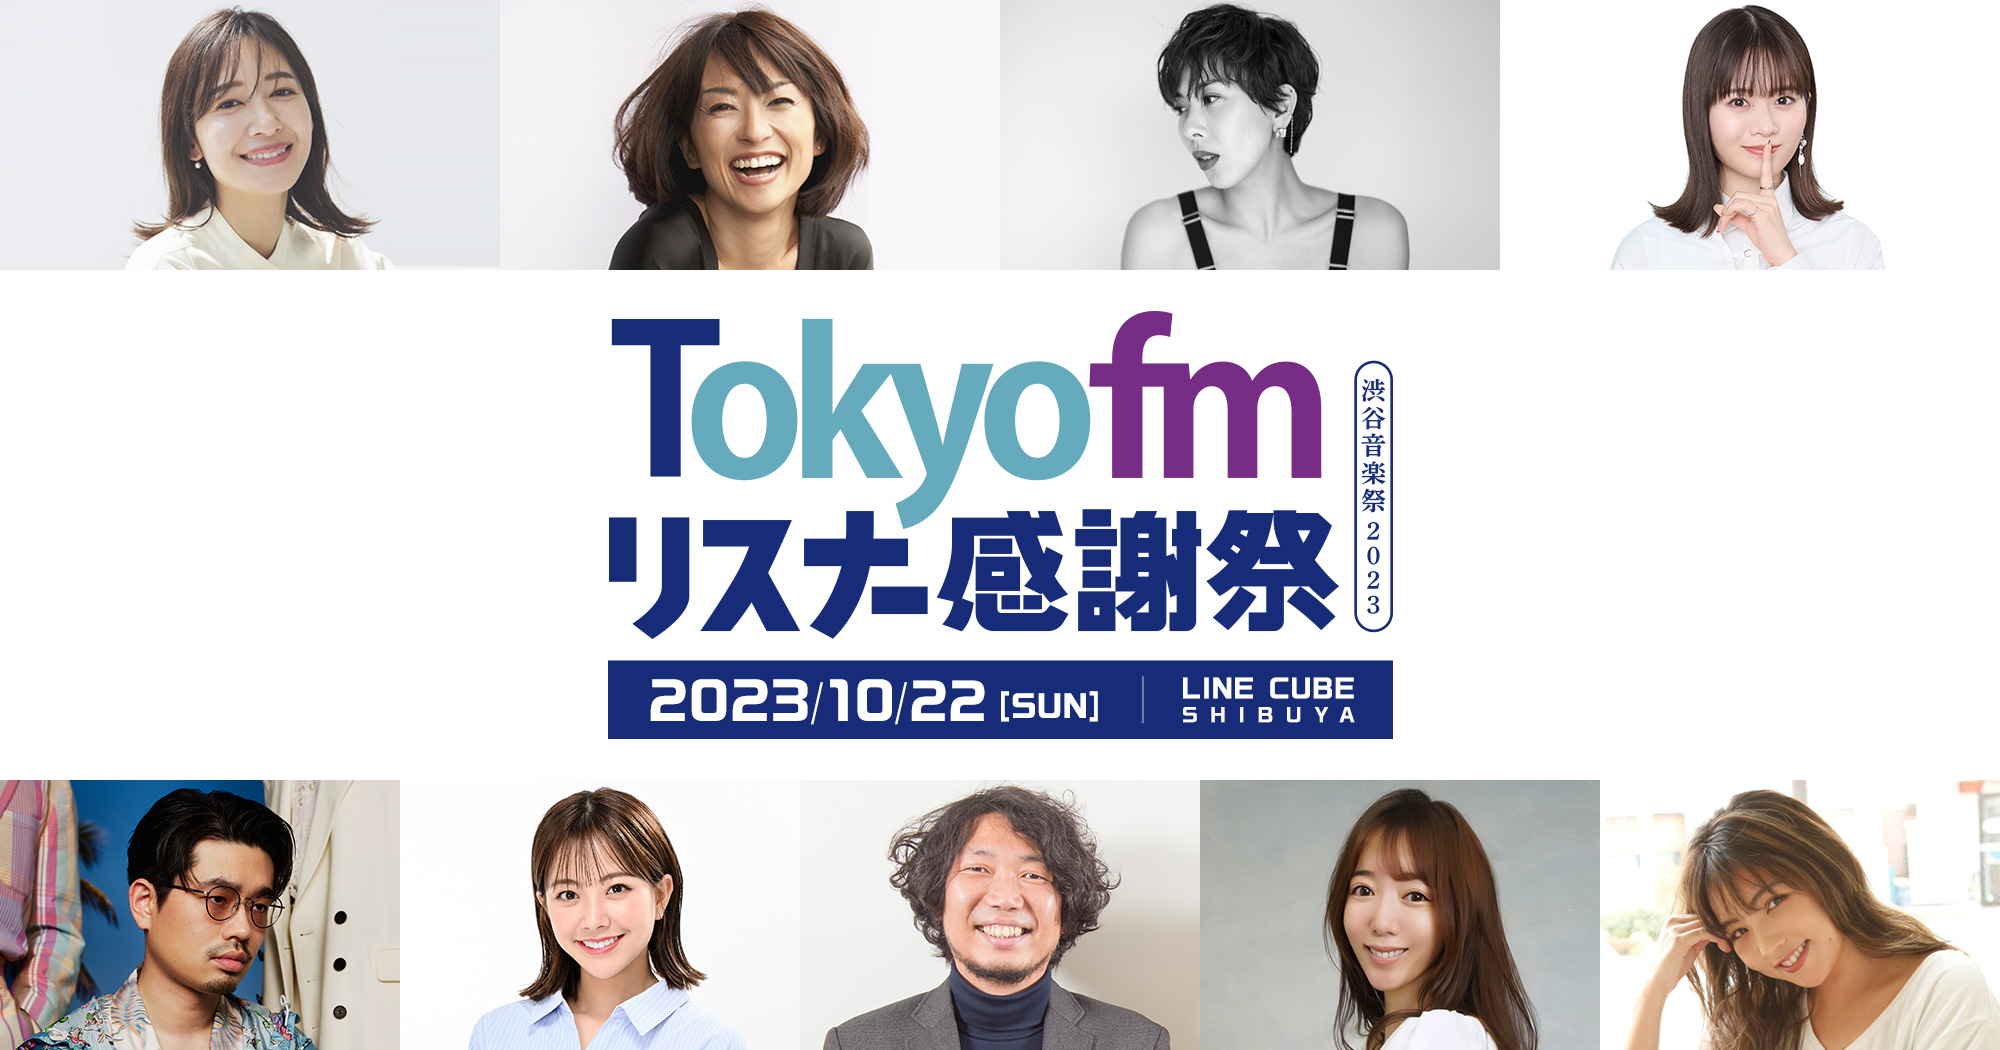 TOKYO FM リスナー感謝祭 渋谷音楽祭2023